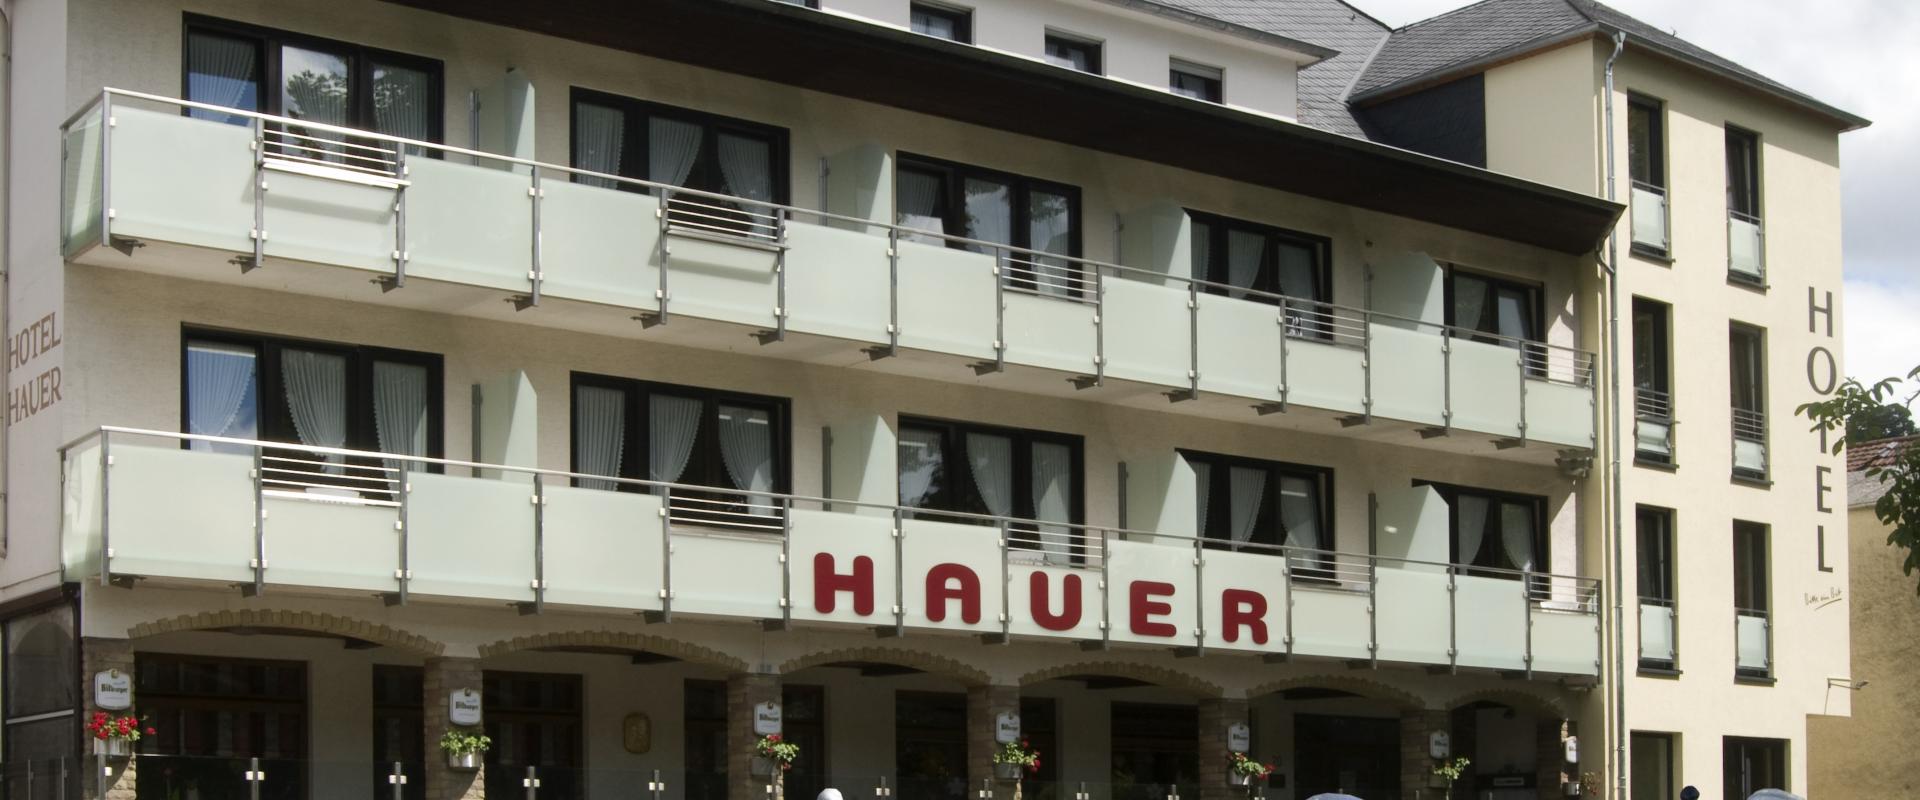 Hotel Restaurant Hauer 1.jpg